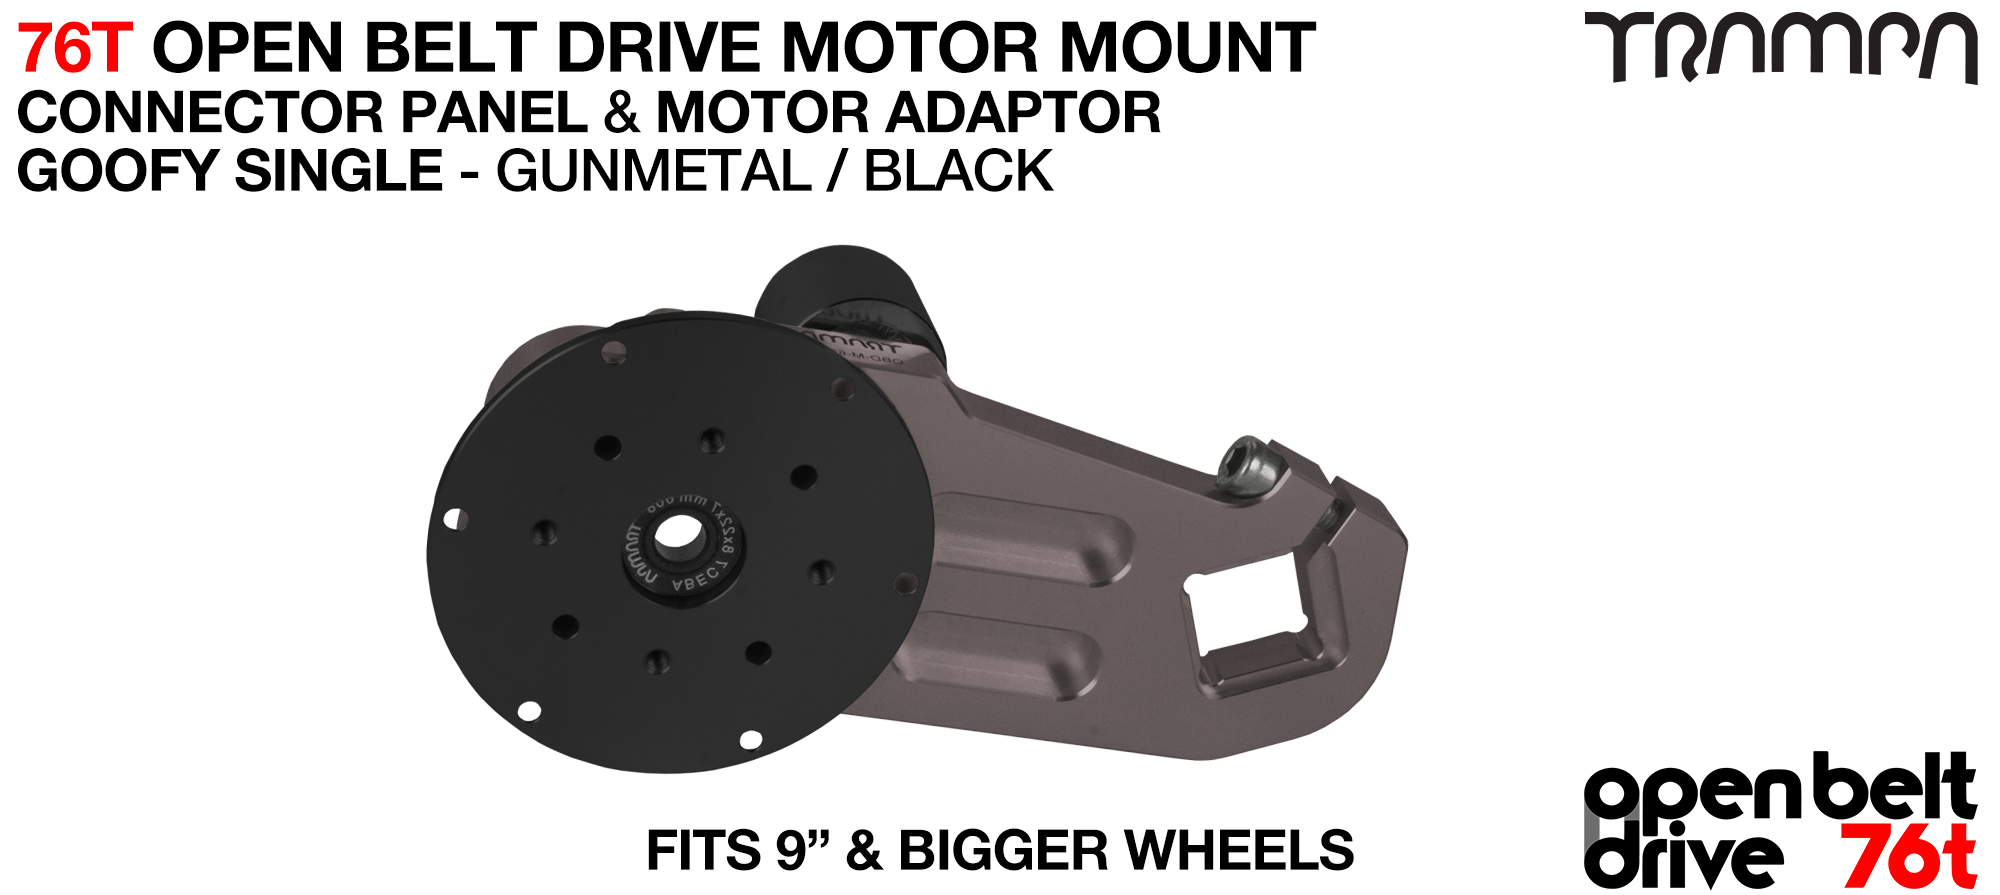 76T Open Belt Drive Motor Mount & Motor Adaptor - SINGLE GUNMETAL